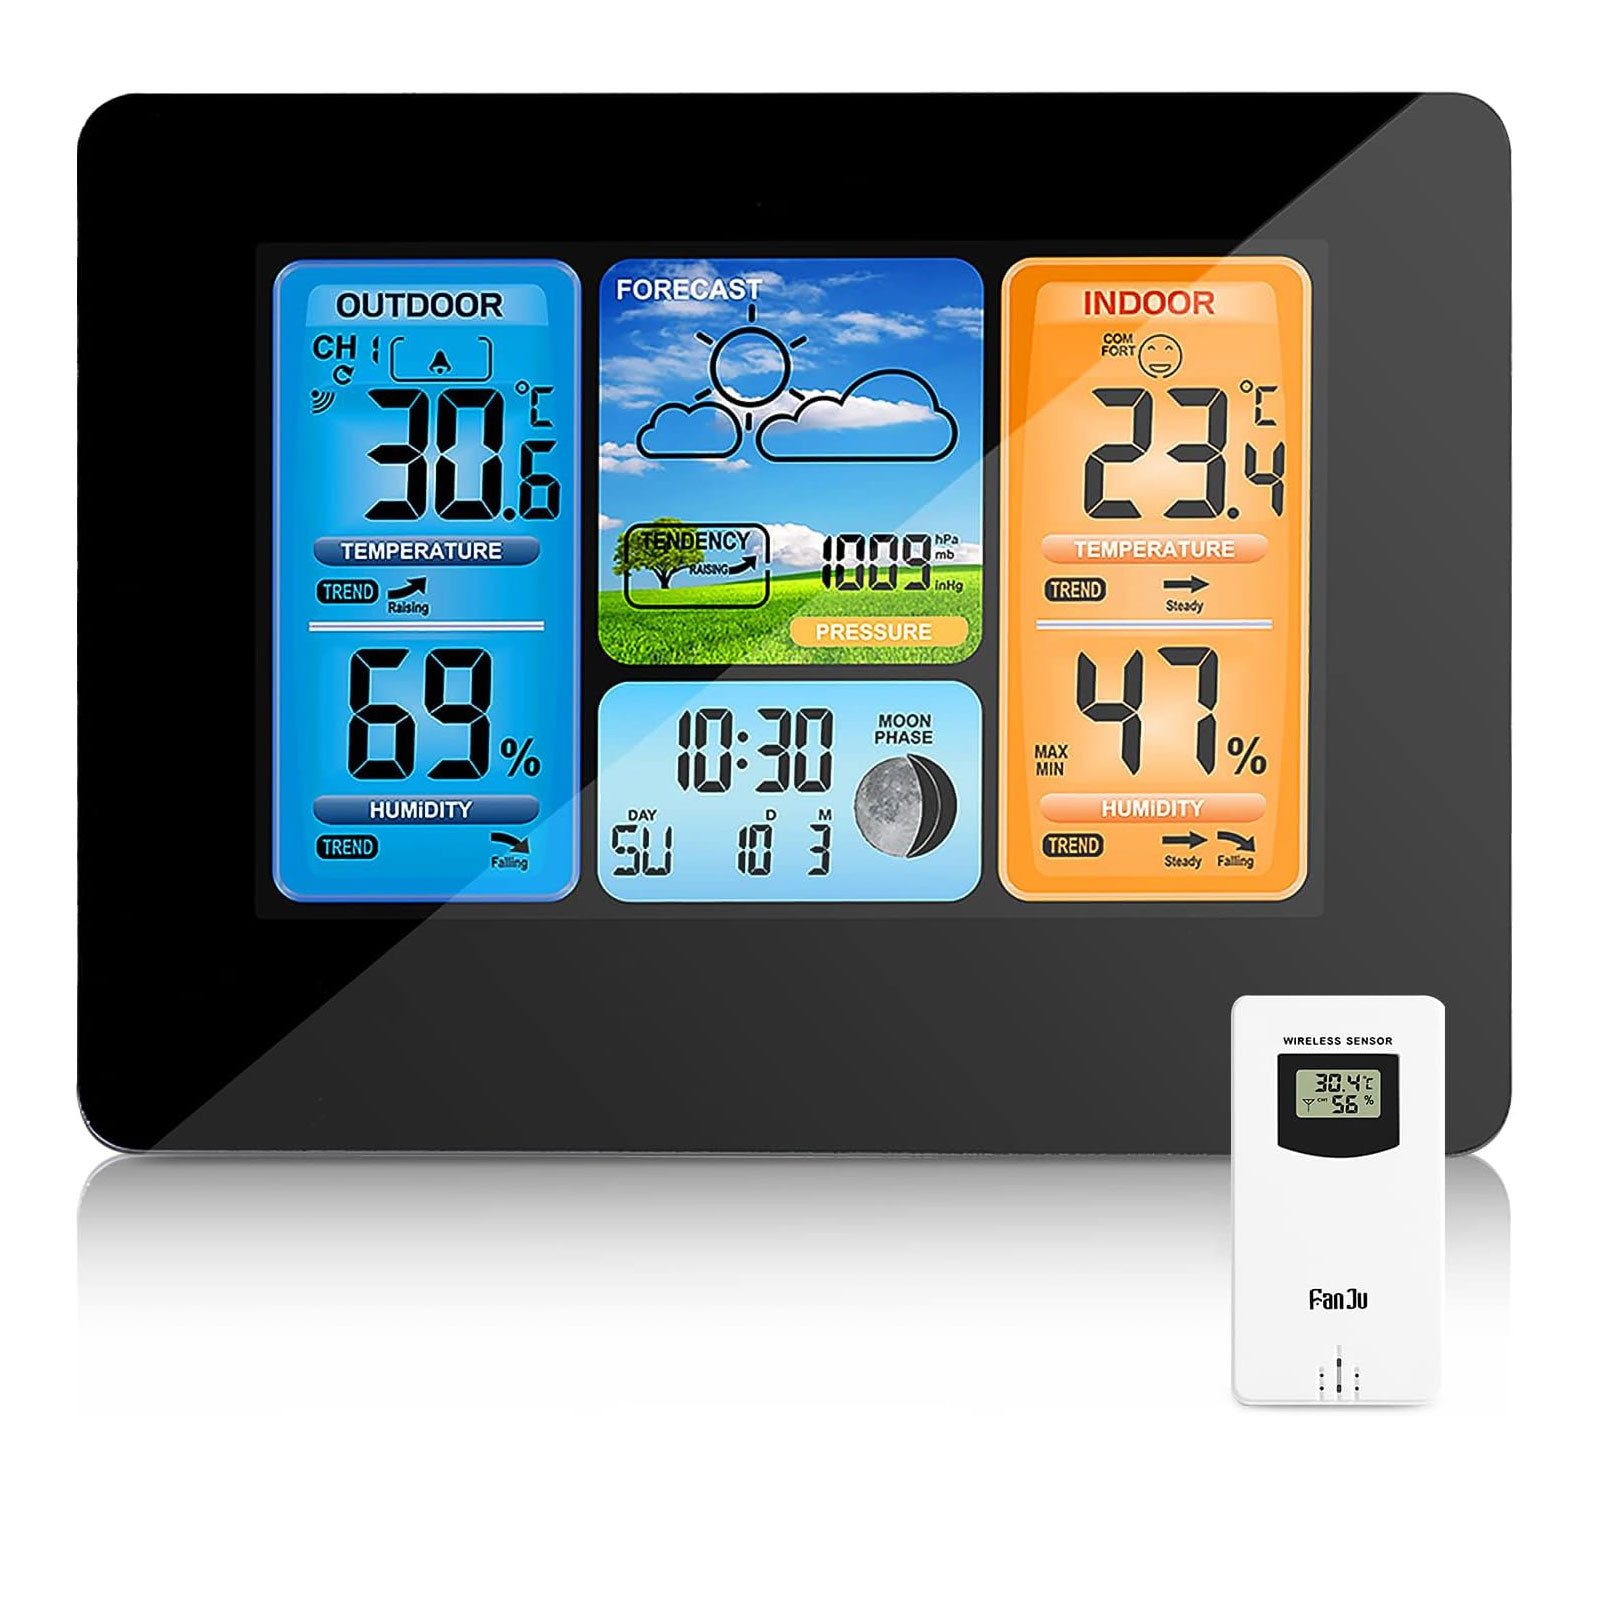 MODFU Digital Wetteruhr Thermometer Raumthermometer Temperaturanzeige Wetterstation (Mit Außensensor Alarm Temperatur Wettervorhersage Wetter Innen Außen)